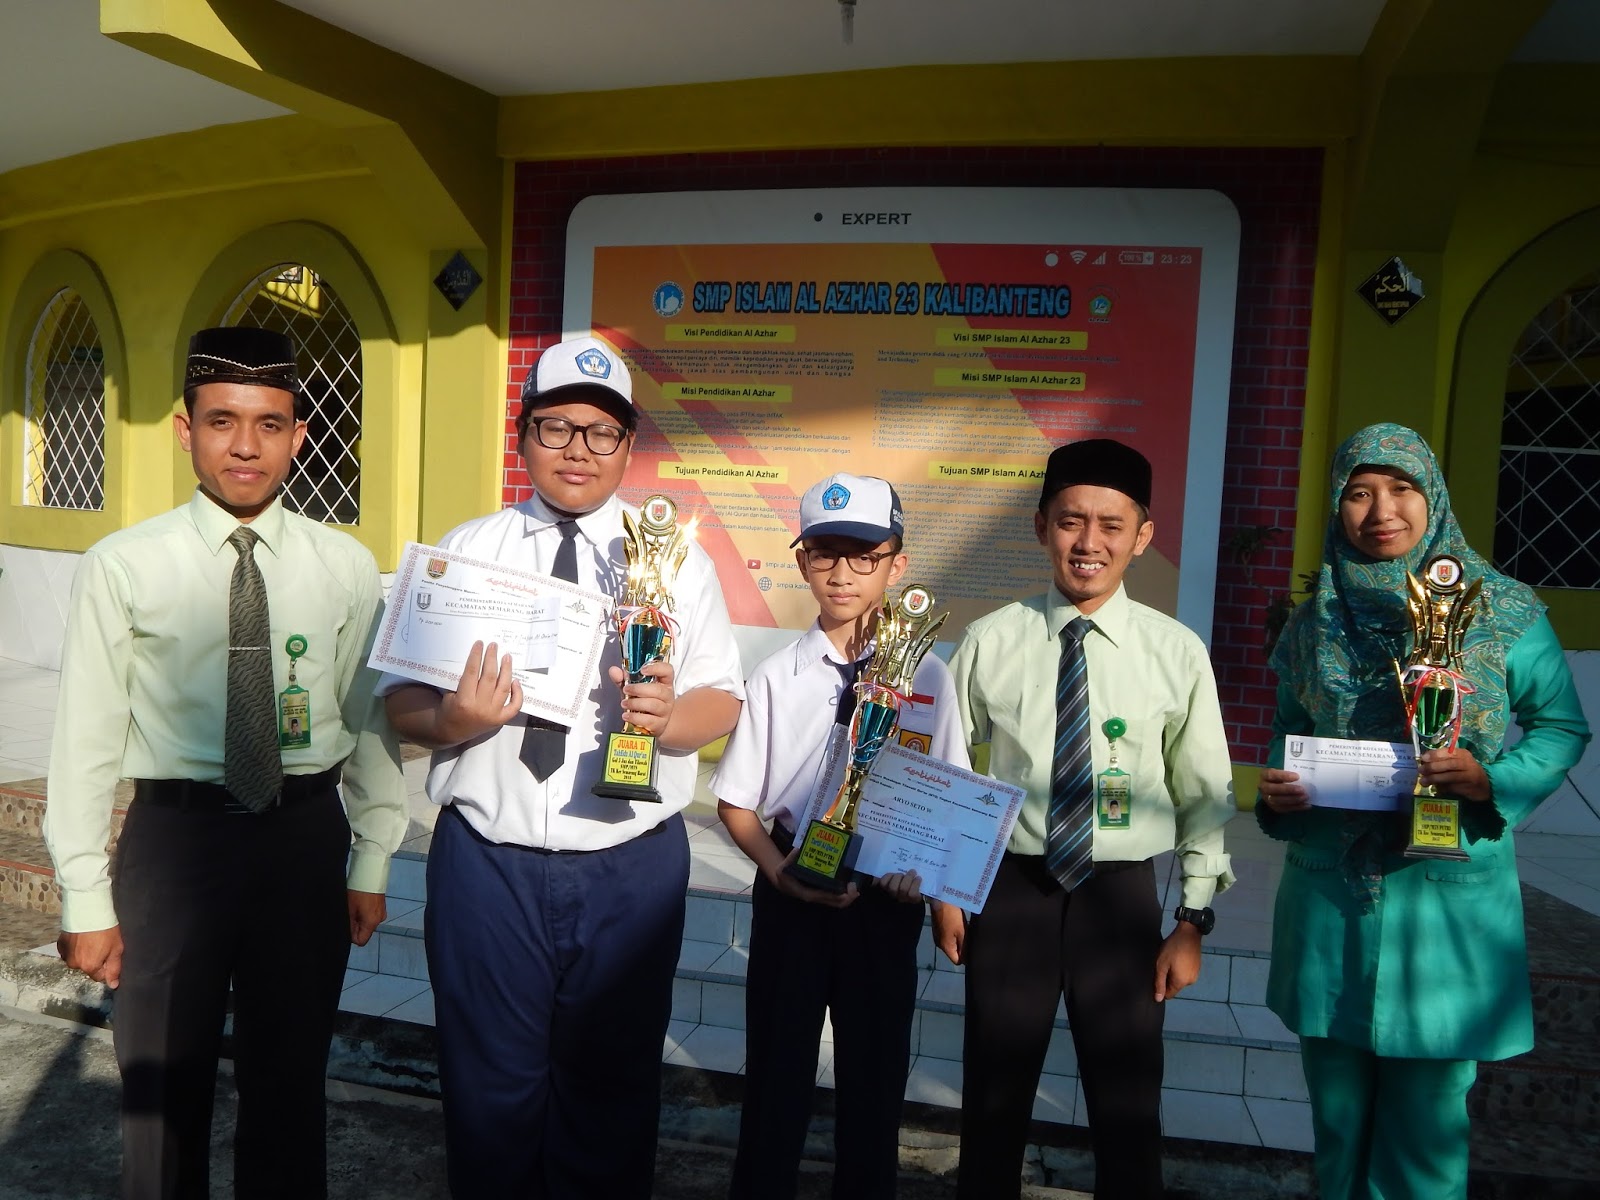 Lomba yang diselenggarakan pada Sabtu 17 Maret 2018 tersebut diikuti oleh perwakilan sekolah SMP MTS se Kecamatan Semarang Barat Semoga semua murid meraih